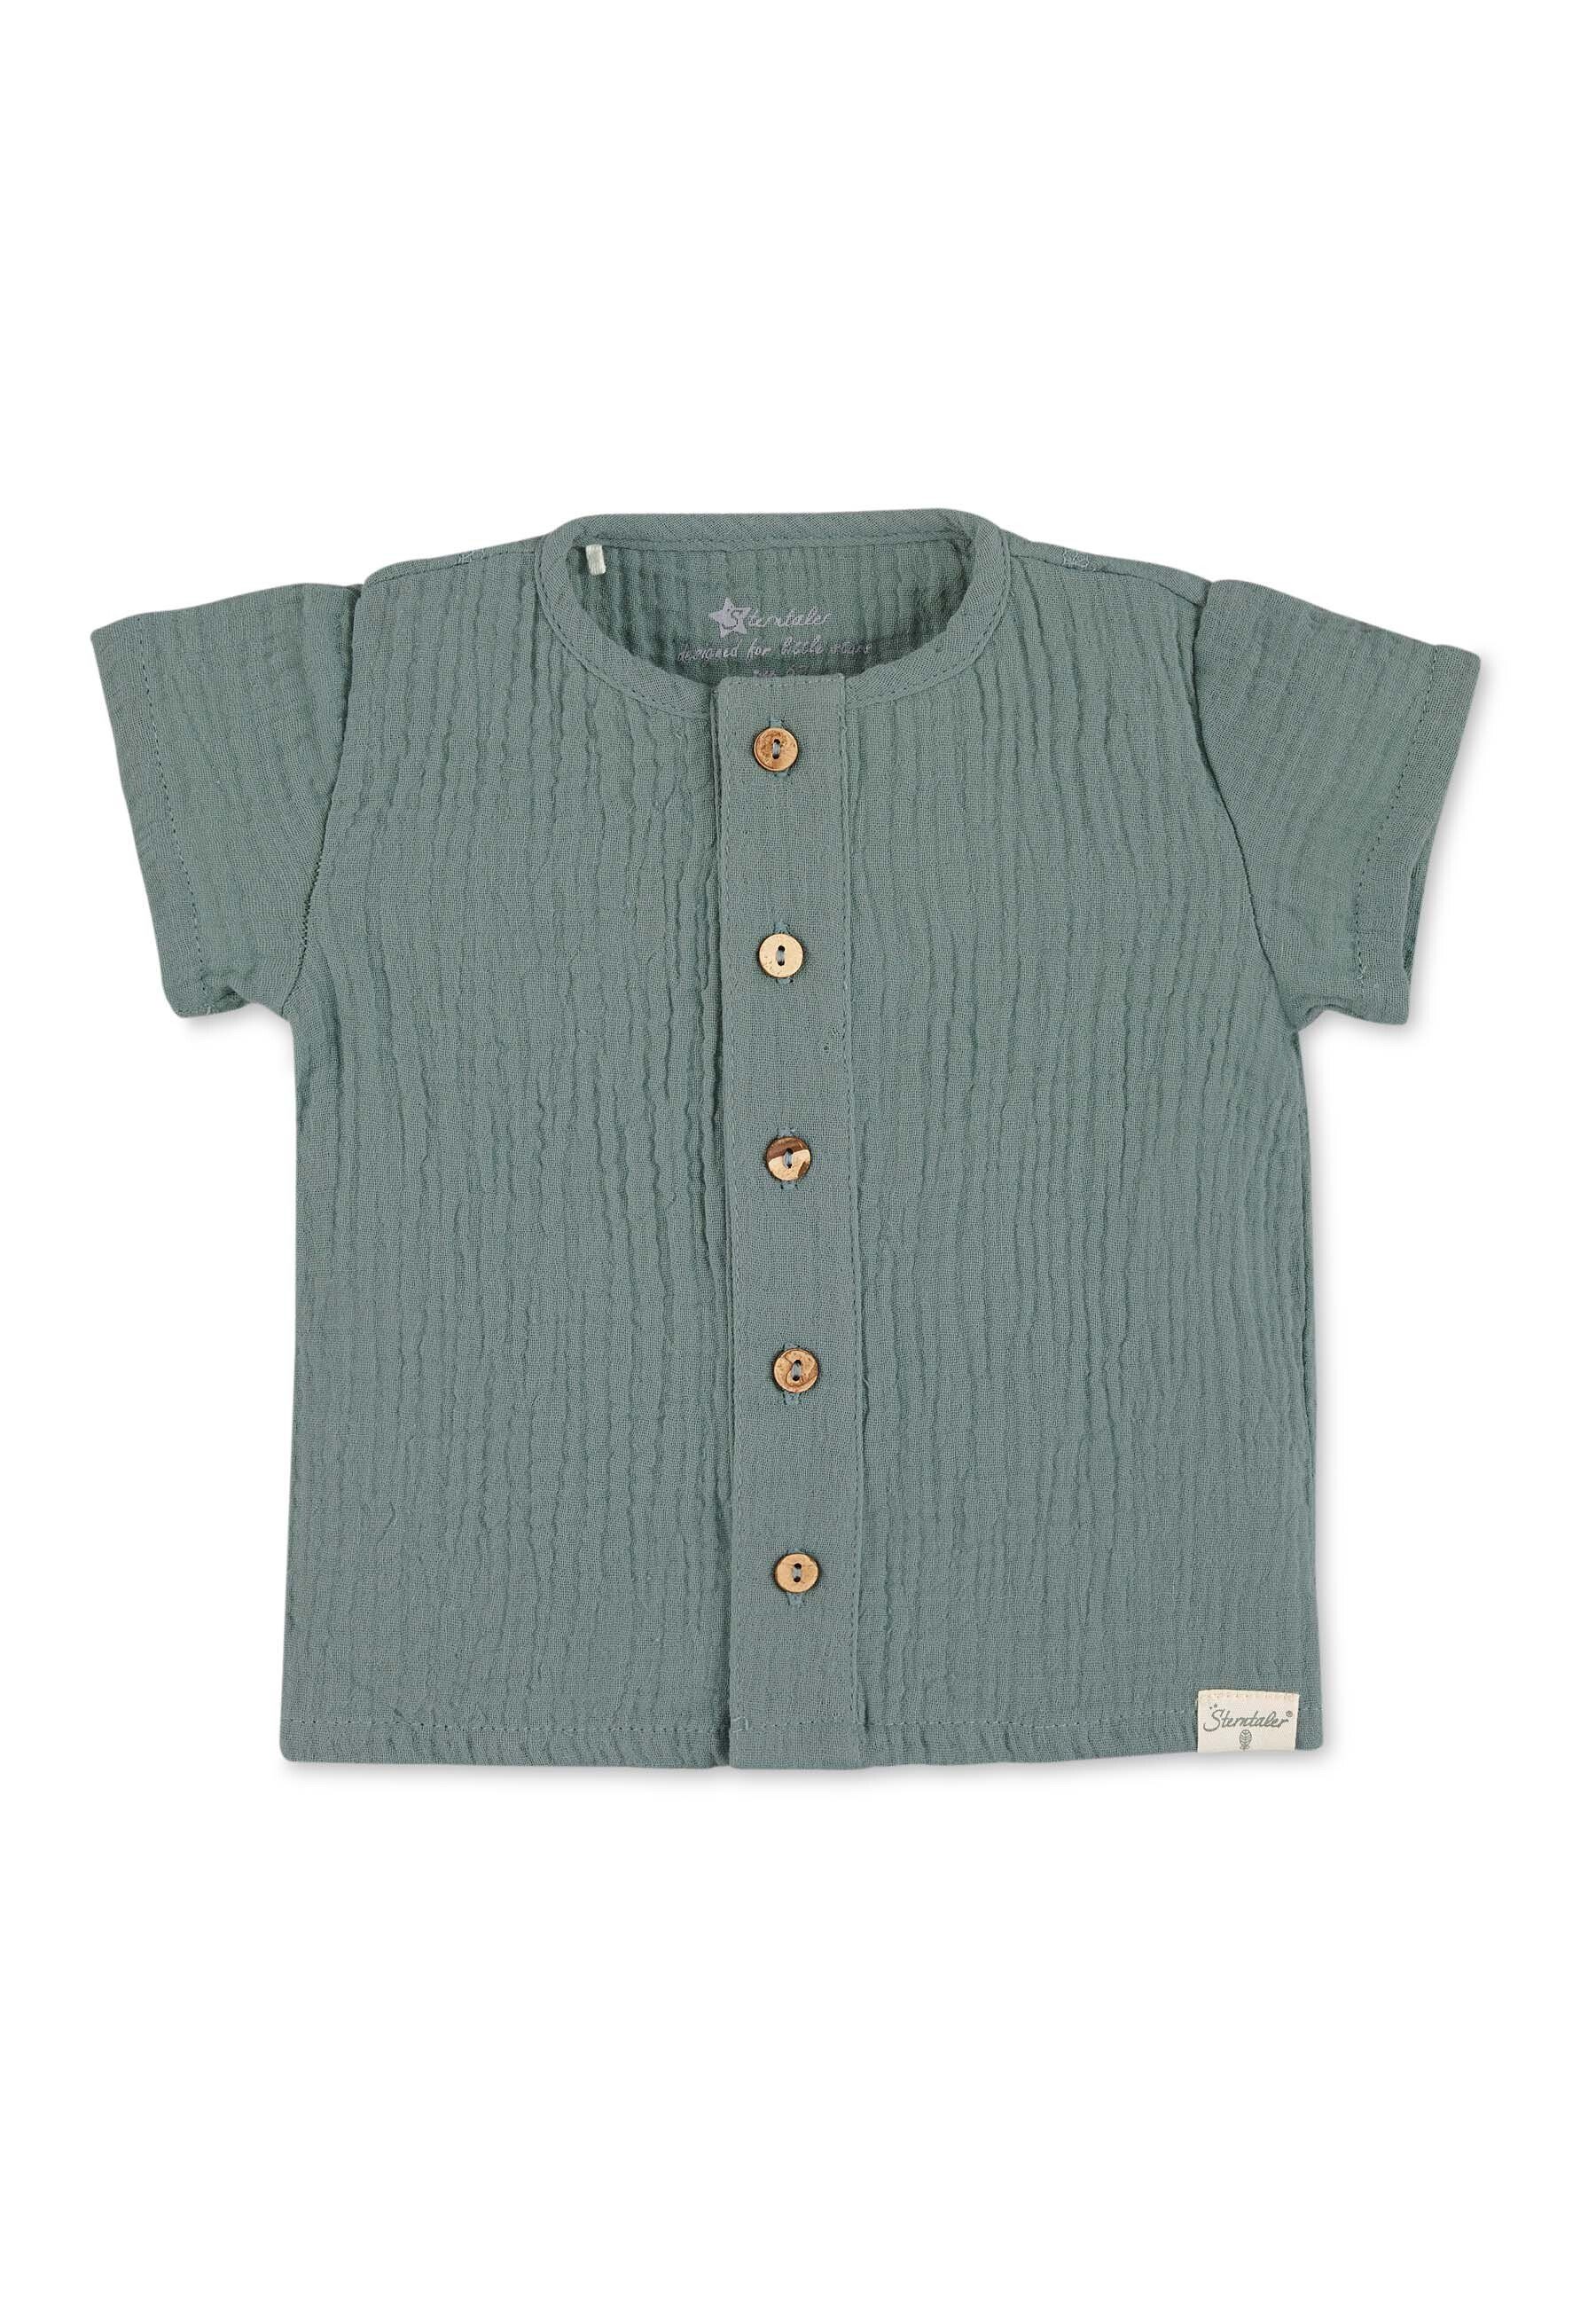 Sterntaler® Shirt & Hose Set Shirt mit kurzer Hose (1-tlg) T-Shirt Hose Set - T-Shirt mit passender Hose, Set Shirt mit kurzer Hose aus Baumwoll-Musselin - Kurzarmshirt mit Knopfleiste vorne und bequemer Pumphose in Grün oder Blau dunkelgrün